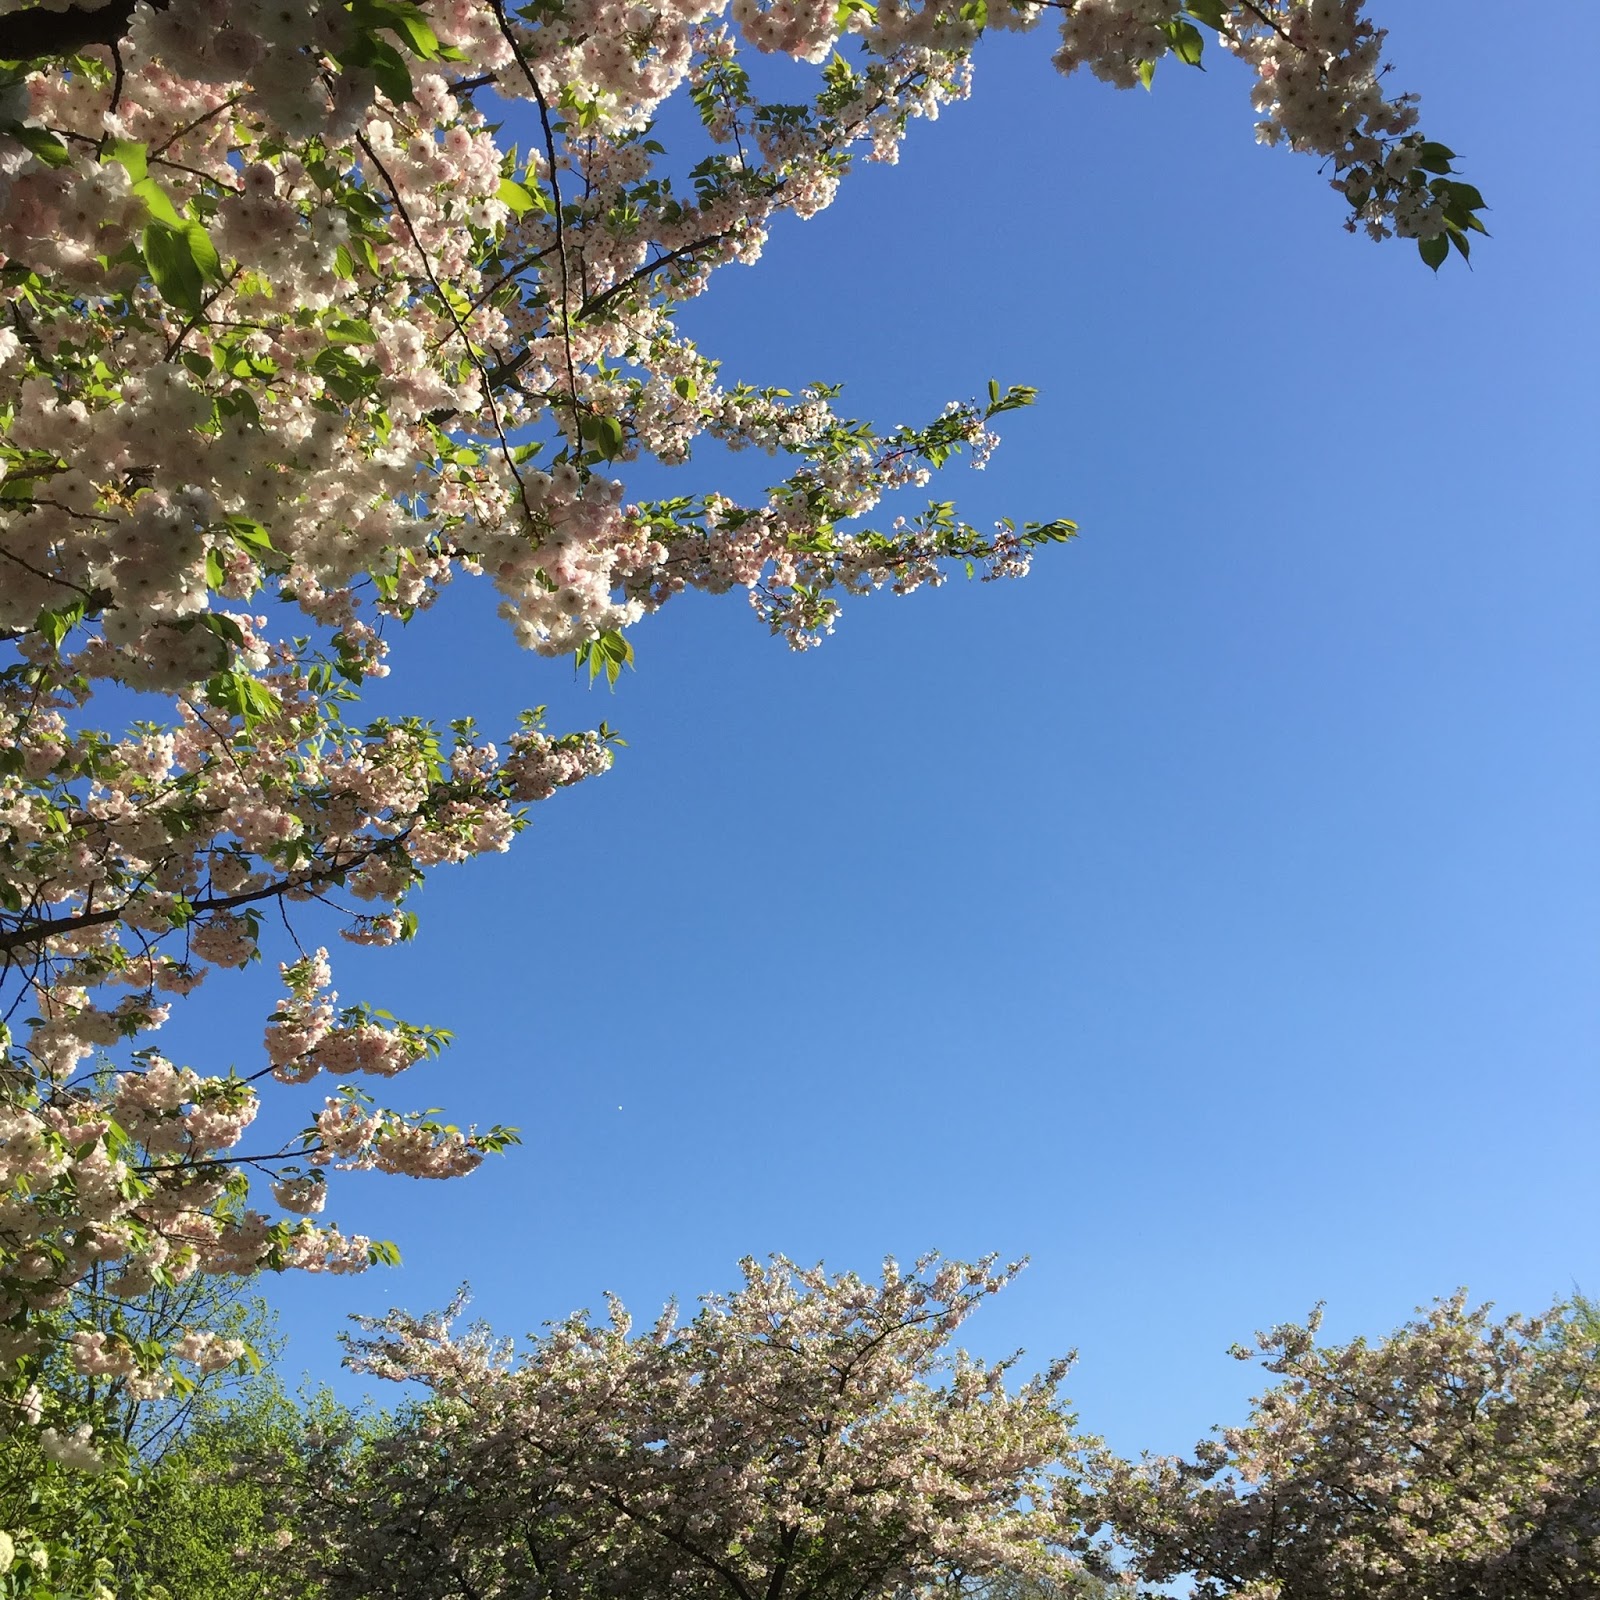 Regents park blossom